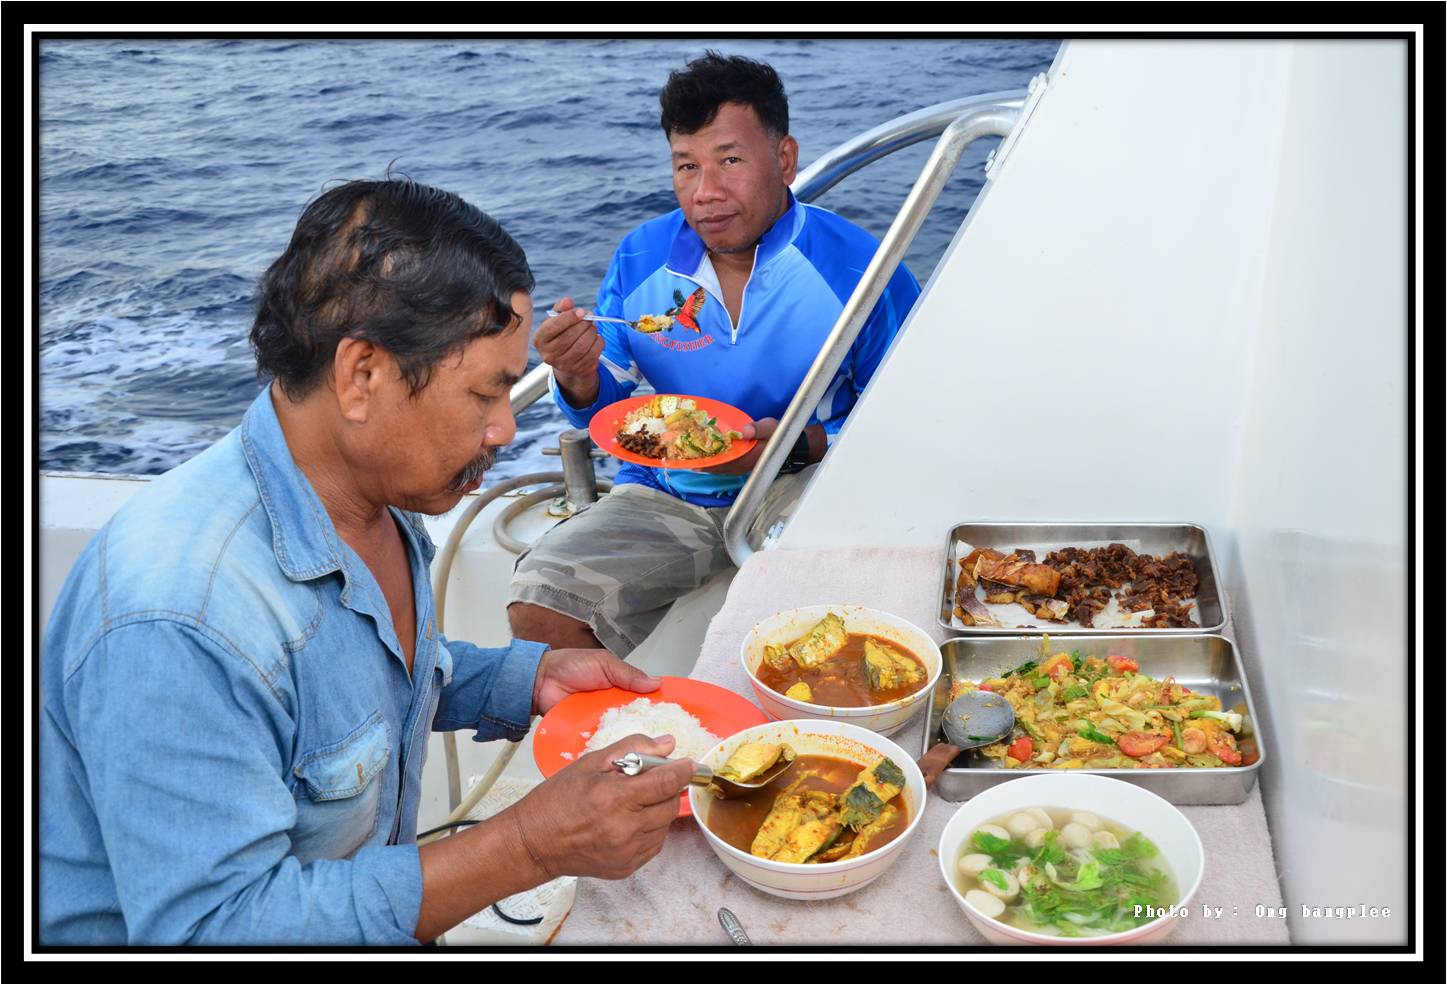 อร่อยทุกมื้อครับ....มาเรือลำนี้ทานข้าว 4 มื้อ ต่อวัน กลางคืนเป็นข้าวต้มปลา ทุกคืนอิ่มท้องจริง ๆ ครับ